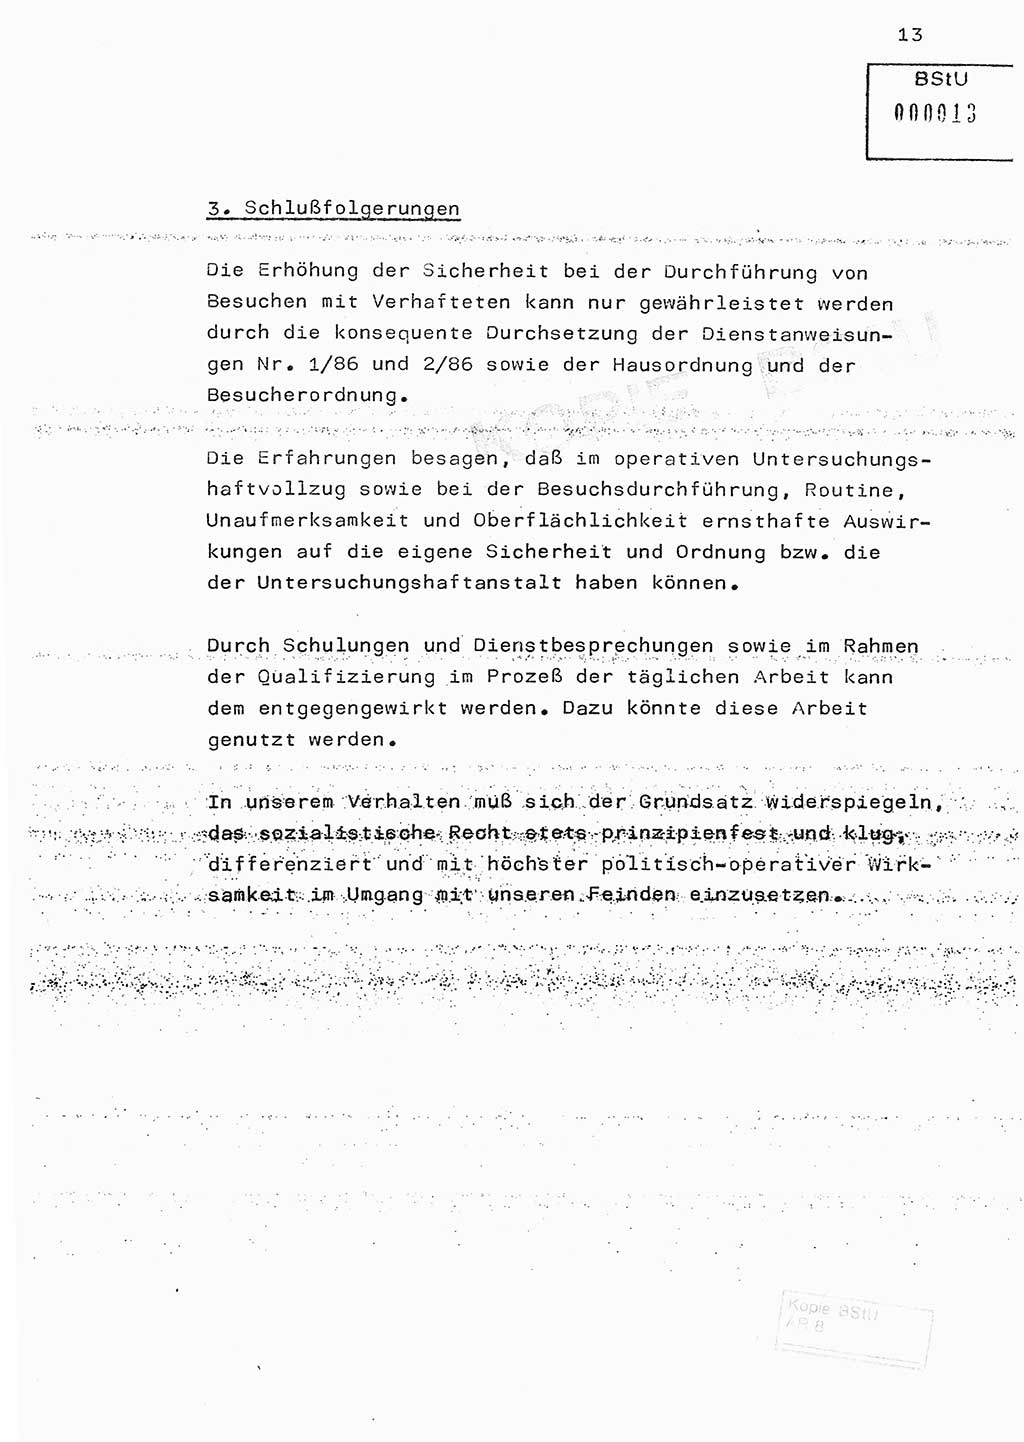 Fachschulabschlußarbeit Hauptmann Edwin Buhse (Abt. ⅩⅣ), Ministerium für Staatssicherheit (MfS) [Deutsche Demokratische Republik (DDR)], Abteilung ⅩⅣ, o.D., o.O, o.J., ca. 1986 wg. Bez. DA 2/86, Seite 13 (FS-Abschl.-Arb. MfS DDR Abt. ⅩⅣ 1986, S. 13)